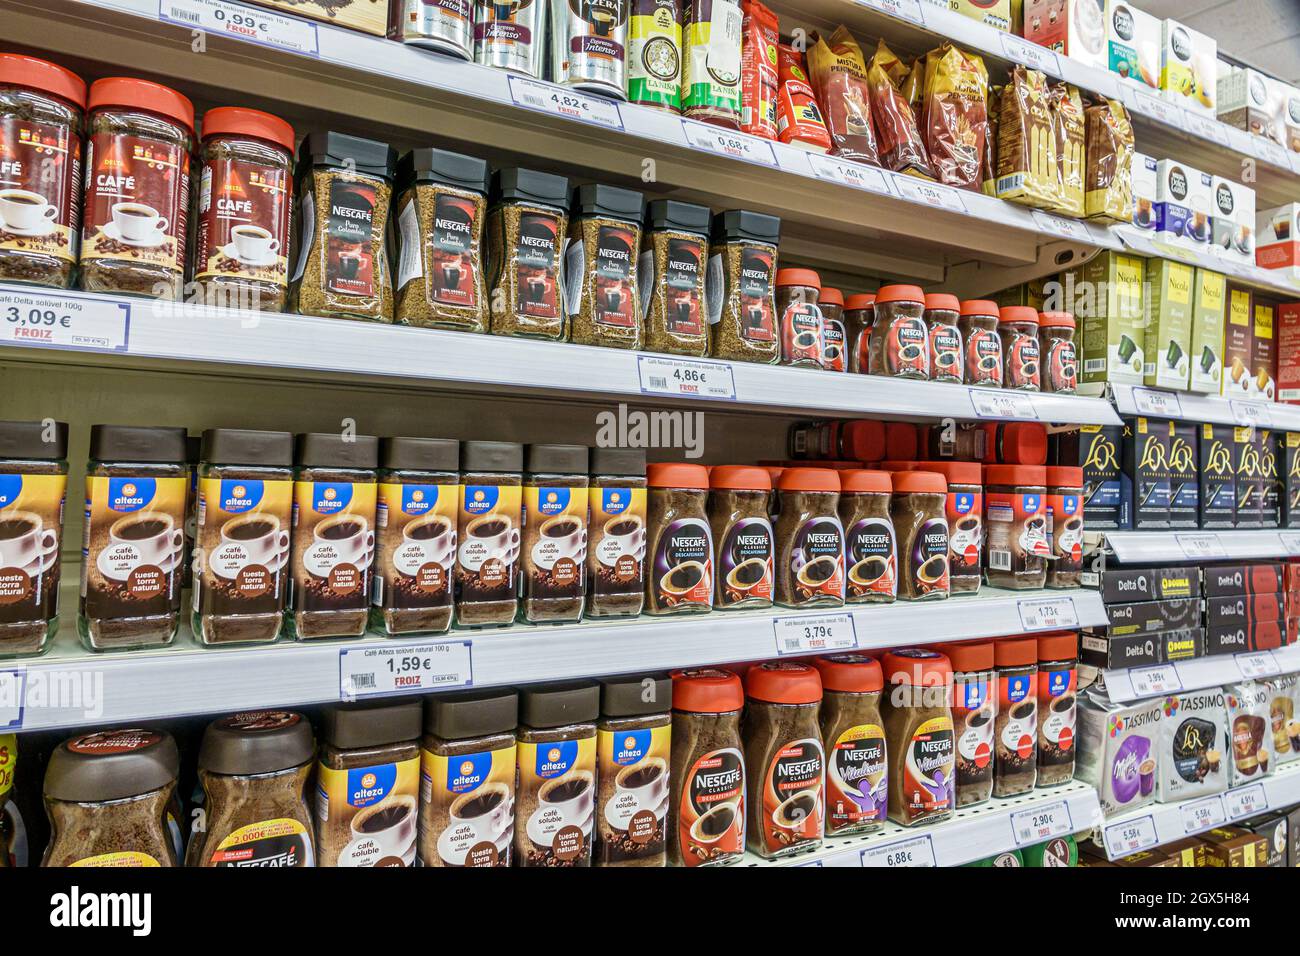 https://c8.alamy.com/comp/2GX5H84/porto-portugalboavistashopping-cidade-do-portomarket-supermercado-froizsupermarket-grocery-store-shelves-display-sale-instant-coffee-nescafe-jars-2GX5H84.jpg